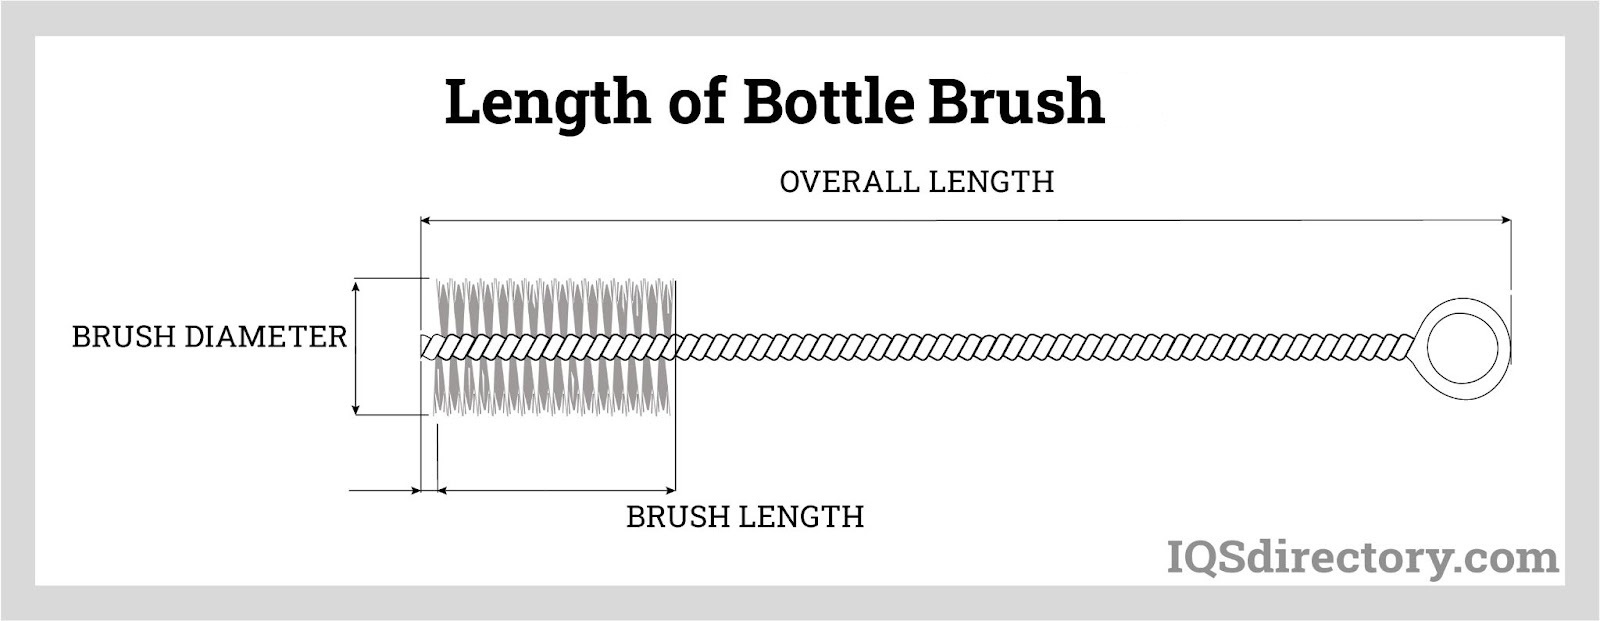 Length of Bottle Brush